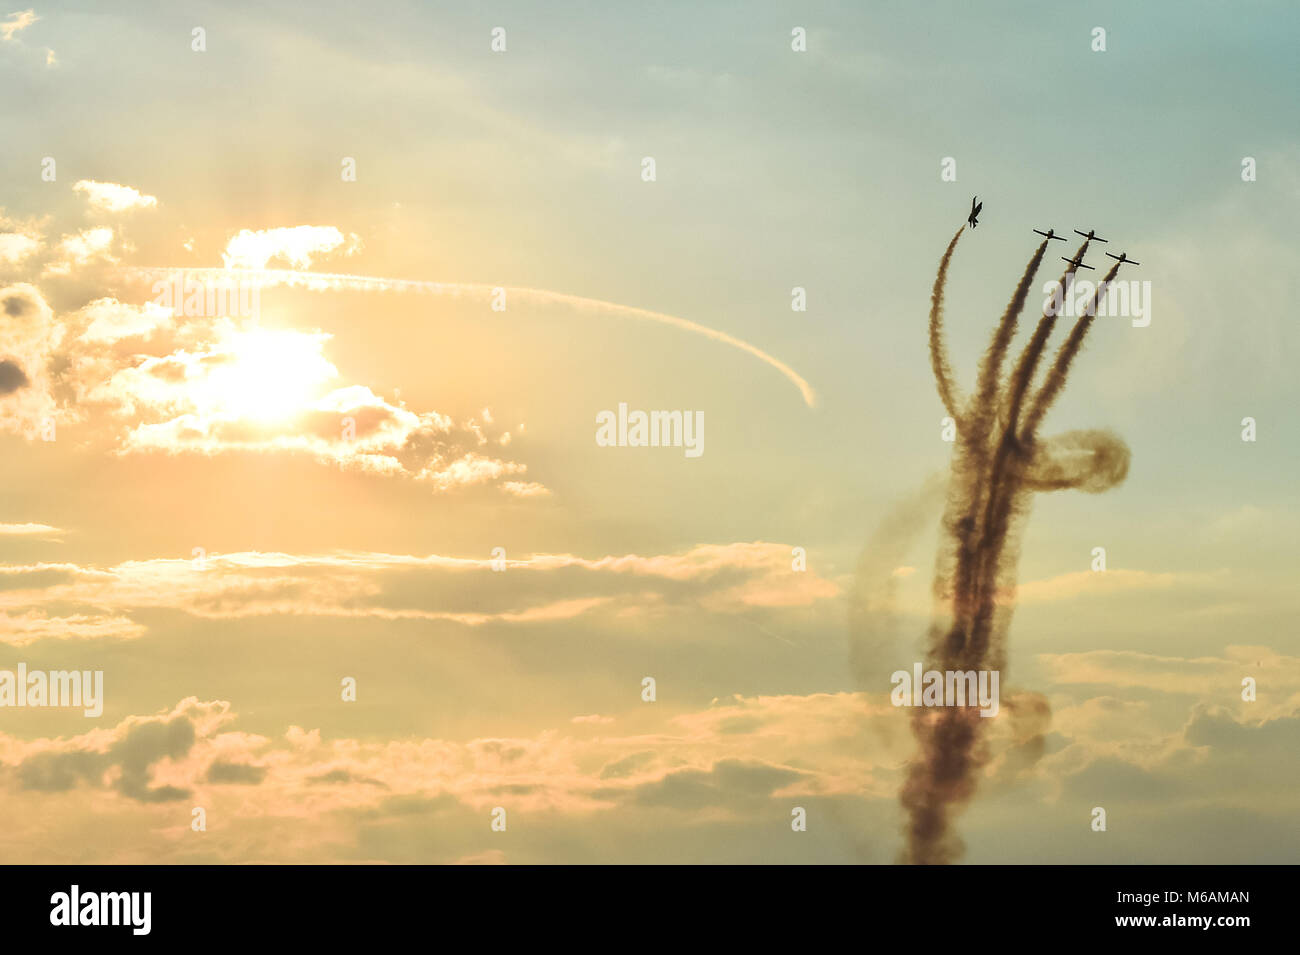 Aerei acrobatici facendo acrobazie in un Airshow di volare al tramonto / Crepuscolo Foto Stock